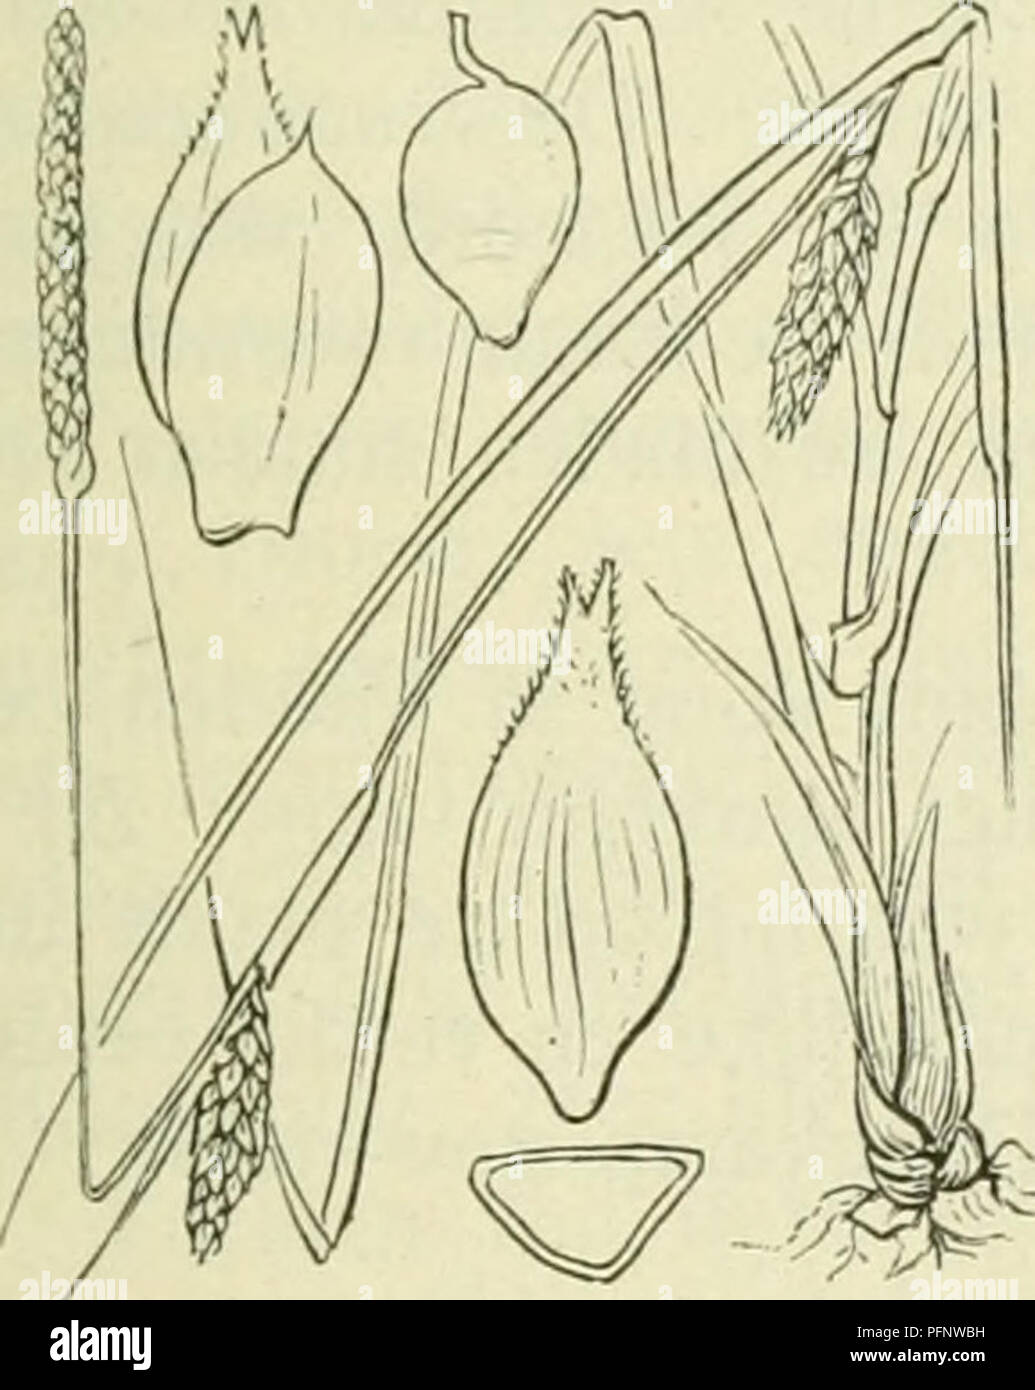 . De flora van Nederland. Pflanzen. Carex strigosa Abb. 326. zaani auch Ina als iinitjes Ile. Deze (fiÂ". 32 (5) zijn drickantit, '- Iancctvormitj ;- ellipsoÃ ¯ discli, ca. 3 mM lanj,', veelnervi. u, noiei (Jeliji&lt; in der Höhle zeer iiei&lt; notten snavel versmald. Het mannelijke aartje ist los - bloemij;, Smal, verlcn. ud, tof 5 cM lanf,', de kafjes zijn vaak iets bruinachtig' nicht stevijje, Groene middenstreep. De vruchten zijn Zeer klein, nog nicht 2 mM lang, eirond, driekanti. u. ^ â. 6-10 dM. Mei, Juni. Voorkomen in Europa en in Nederland. De Anlage komt in Midden-Europa verspreid in bosschen op vochtige p Stockfoto